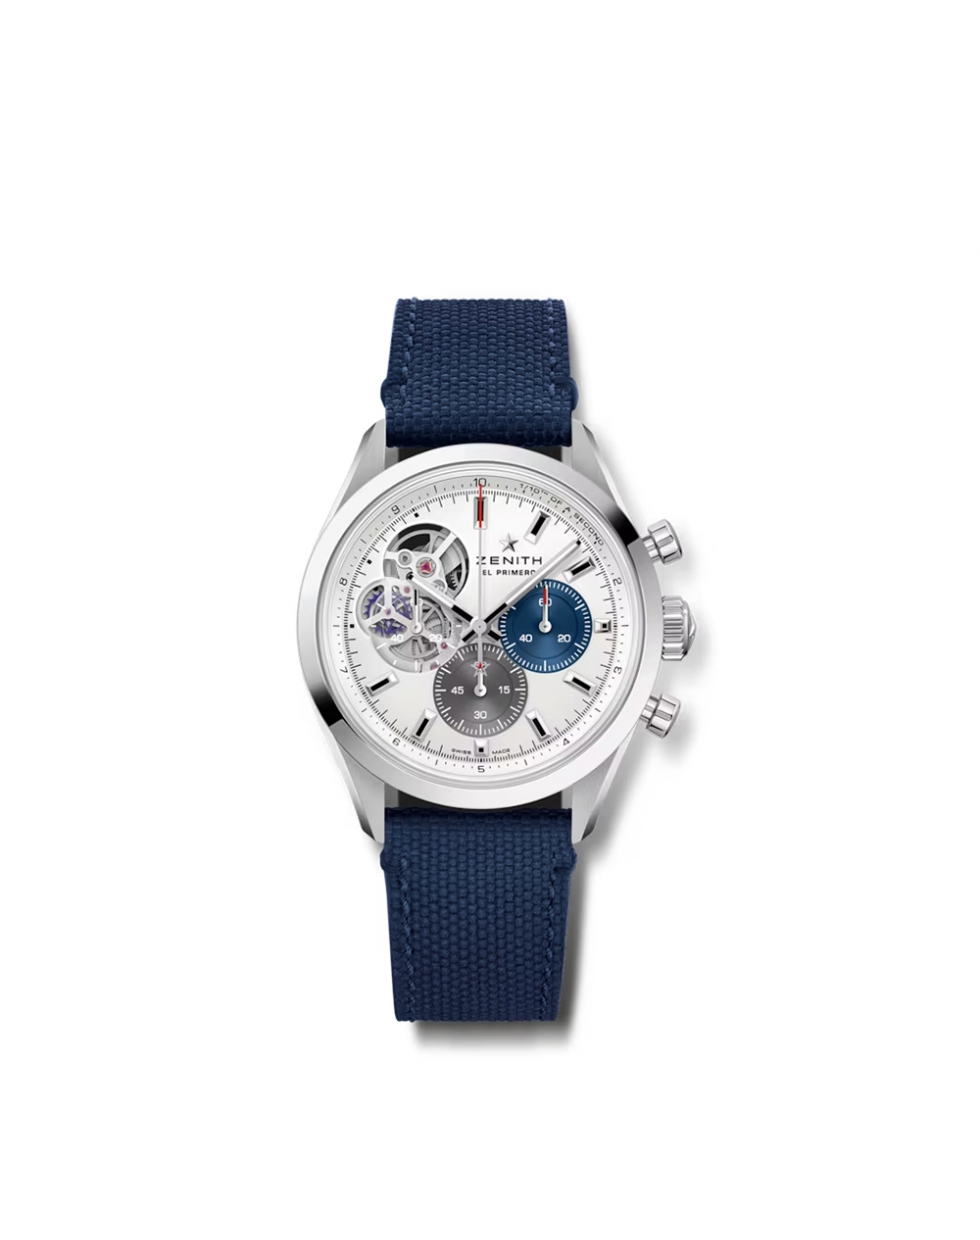 Montre Zenith Chronomaster Open automatique cadran argenté mat bracelet en caoutchouc bleu effet cordura 39,5 mm